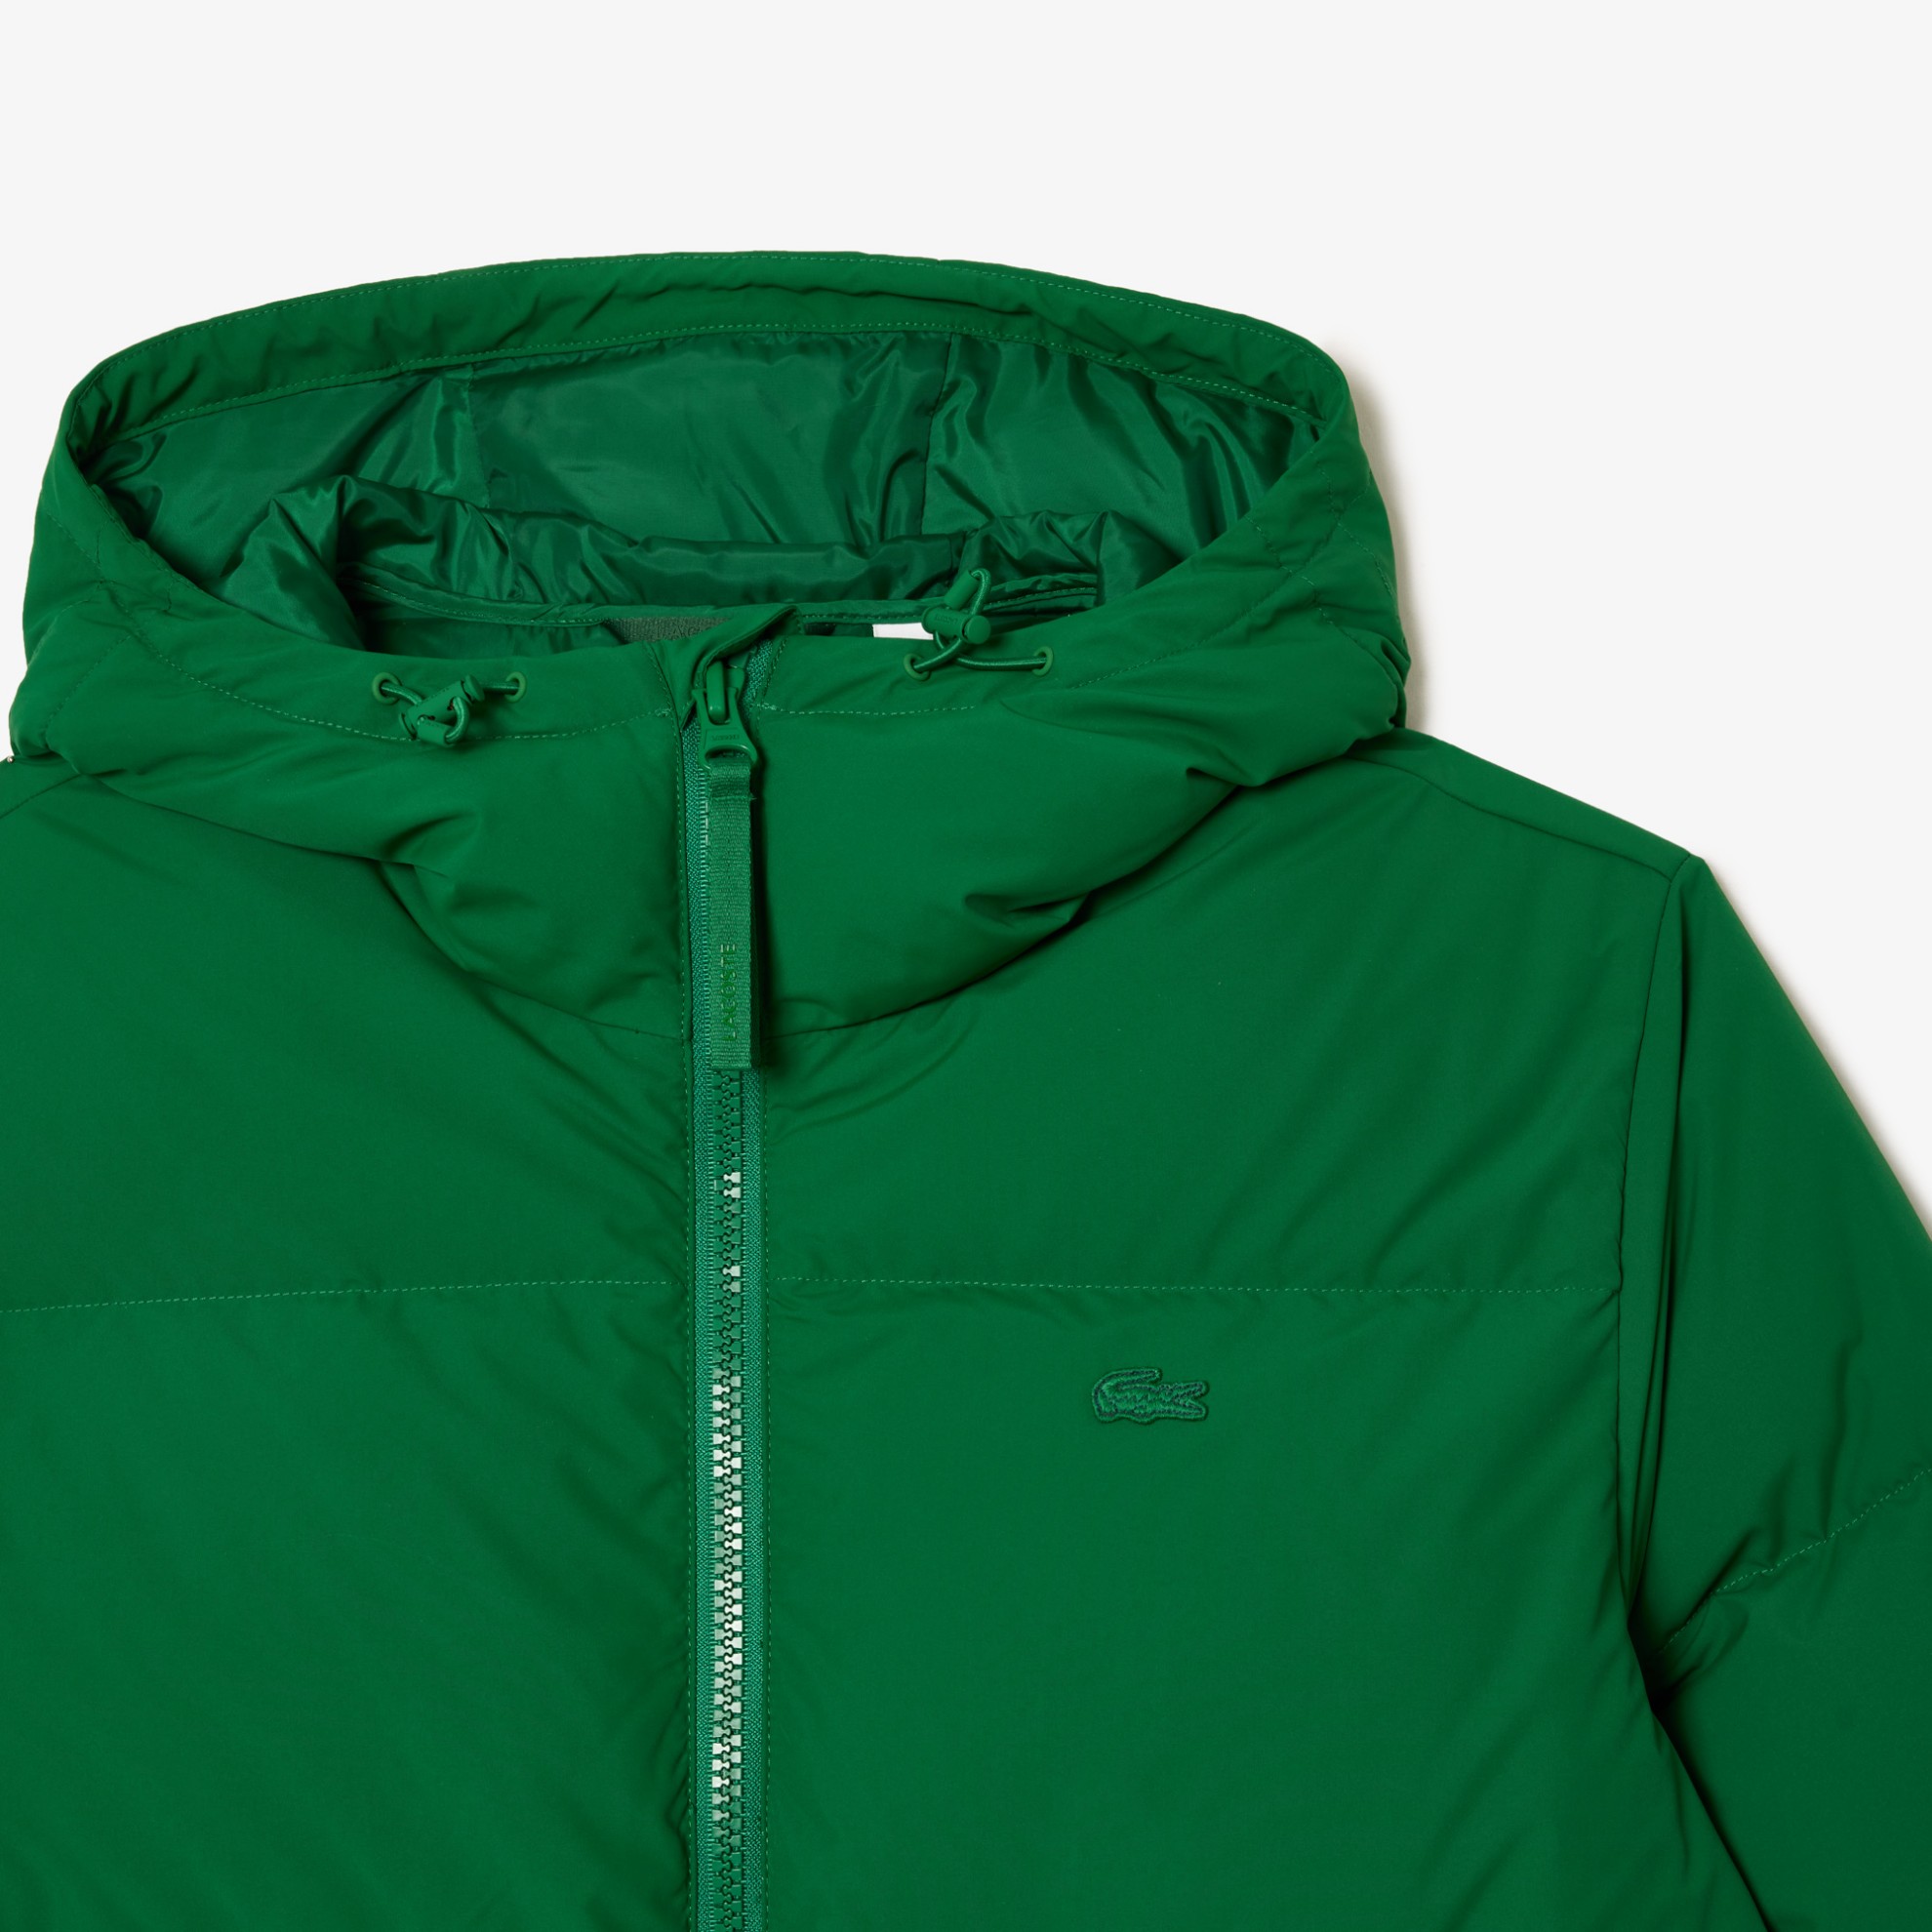 Εικόνα της Ανδρικό Lacoste Quilted Αδιάβροχο Κοντό Puffer Jacket